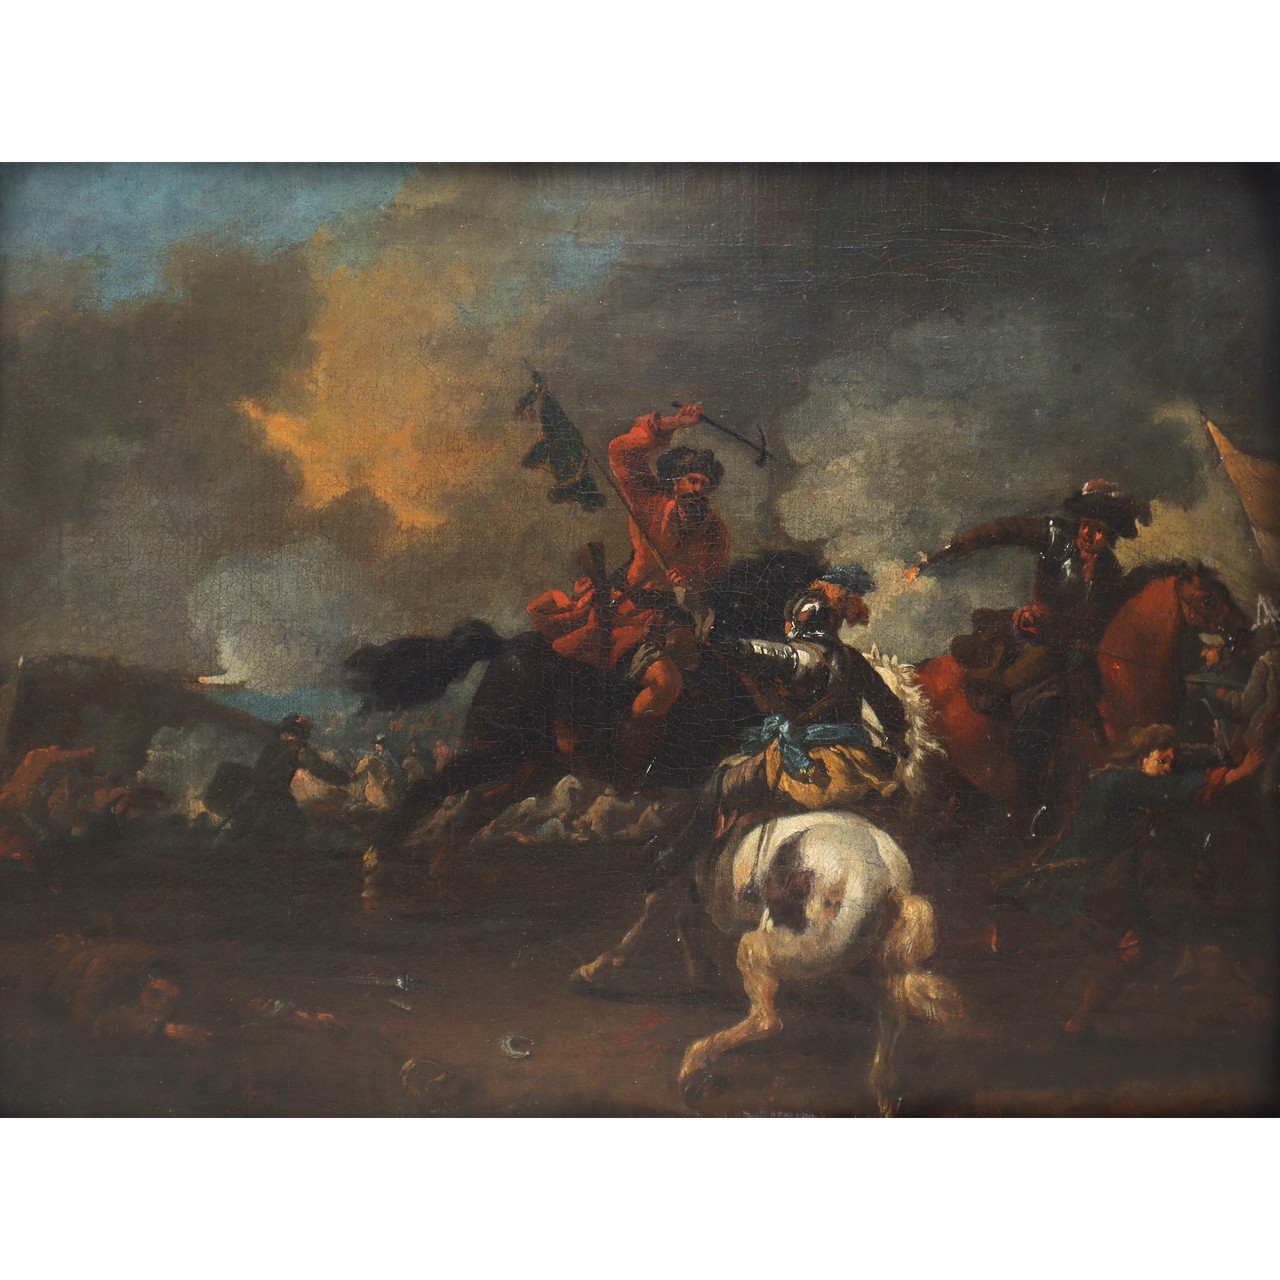 Adam Frans van der Meulen (allegedly by) (Flemish 1632-1690) - Battle between knights